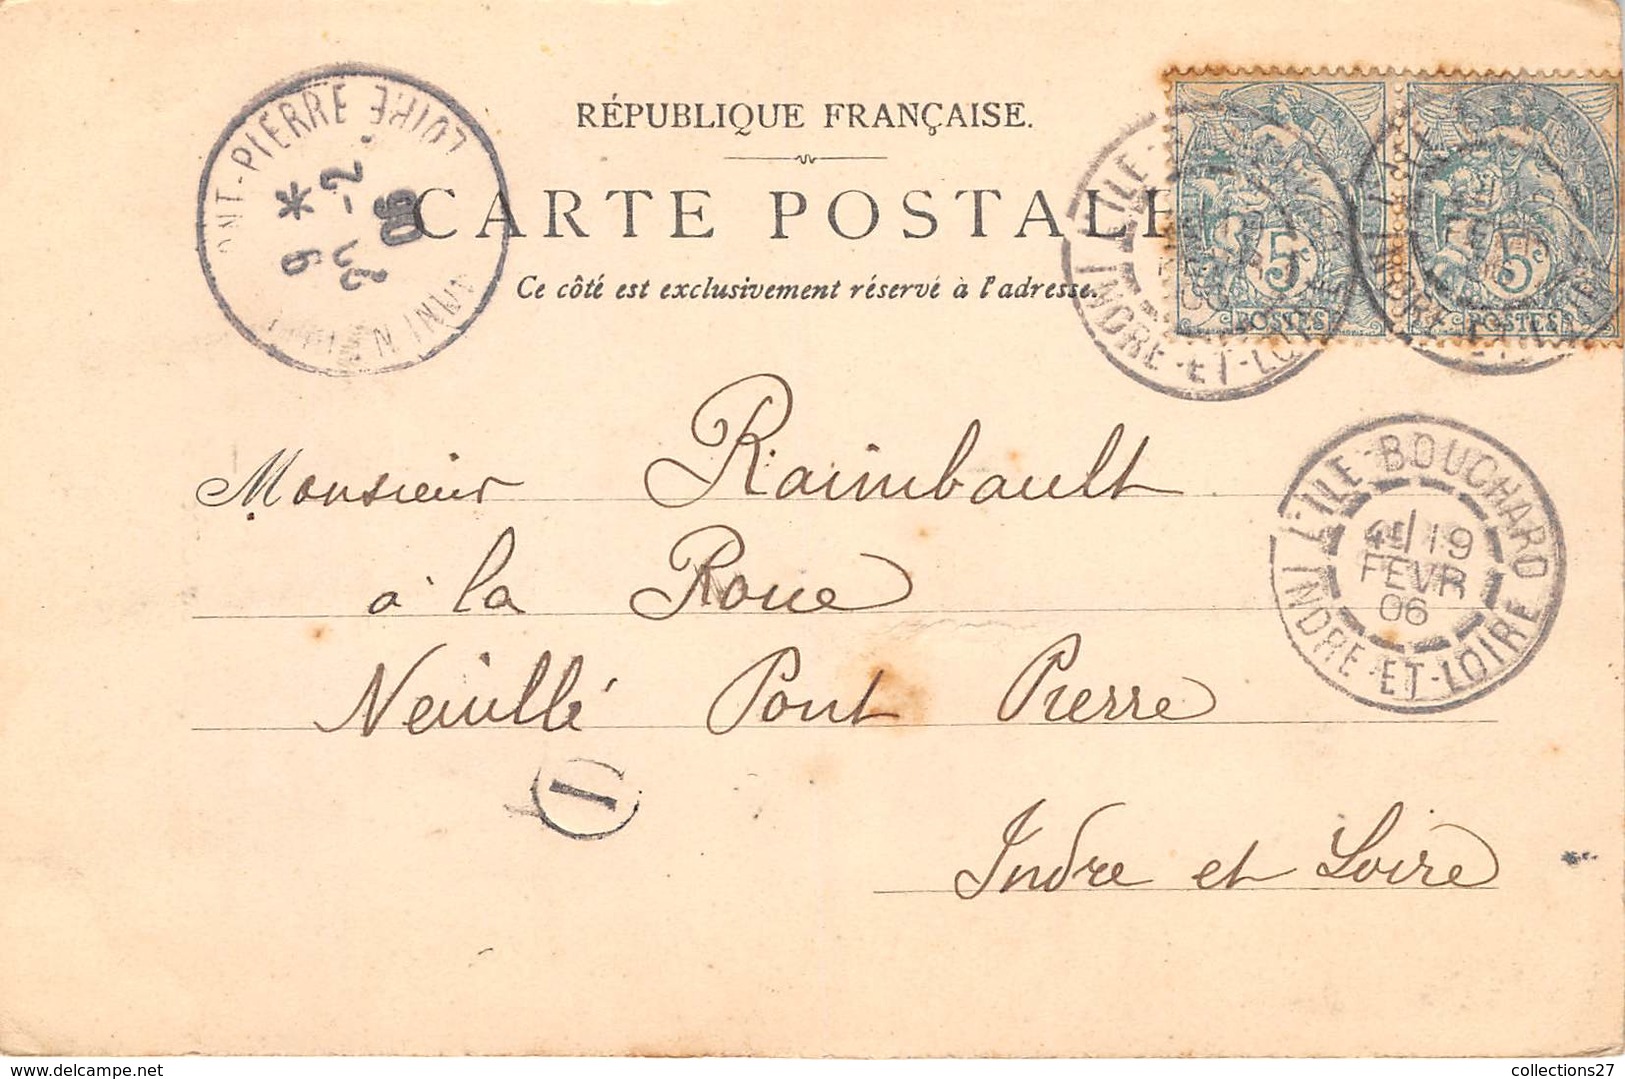 75-PARIS-TOUR EIFFEL-EXPOSITION UNIVERSELLE DE PARIS 1900 VUE GENERALE PRISE DU TROCADERO - Tour Eiffel